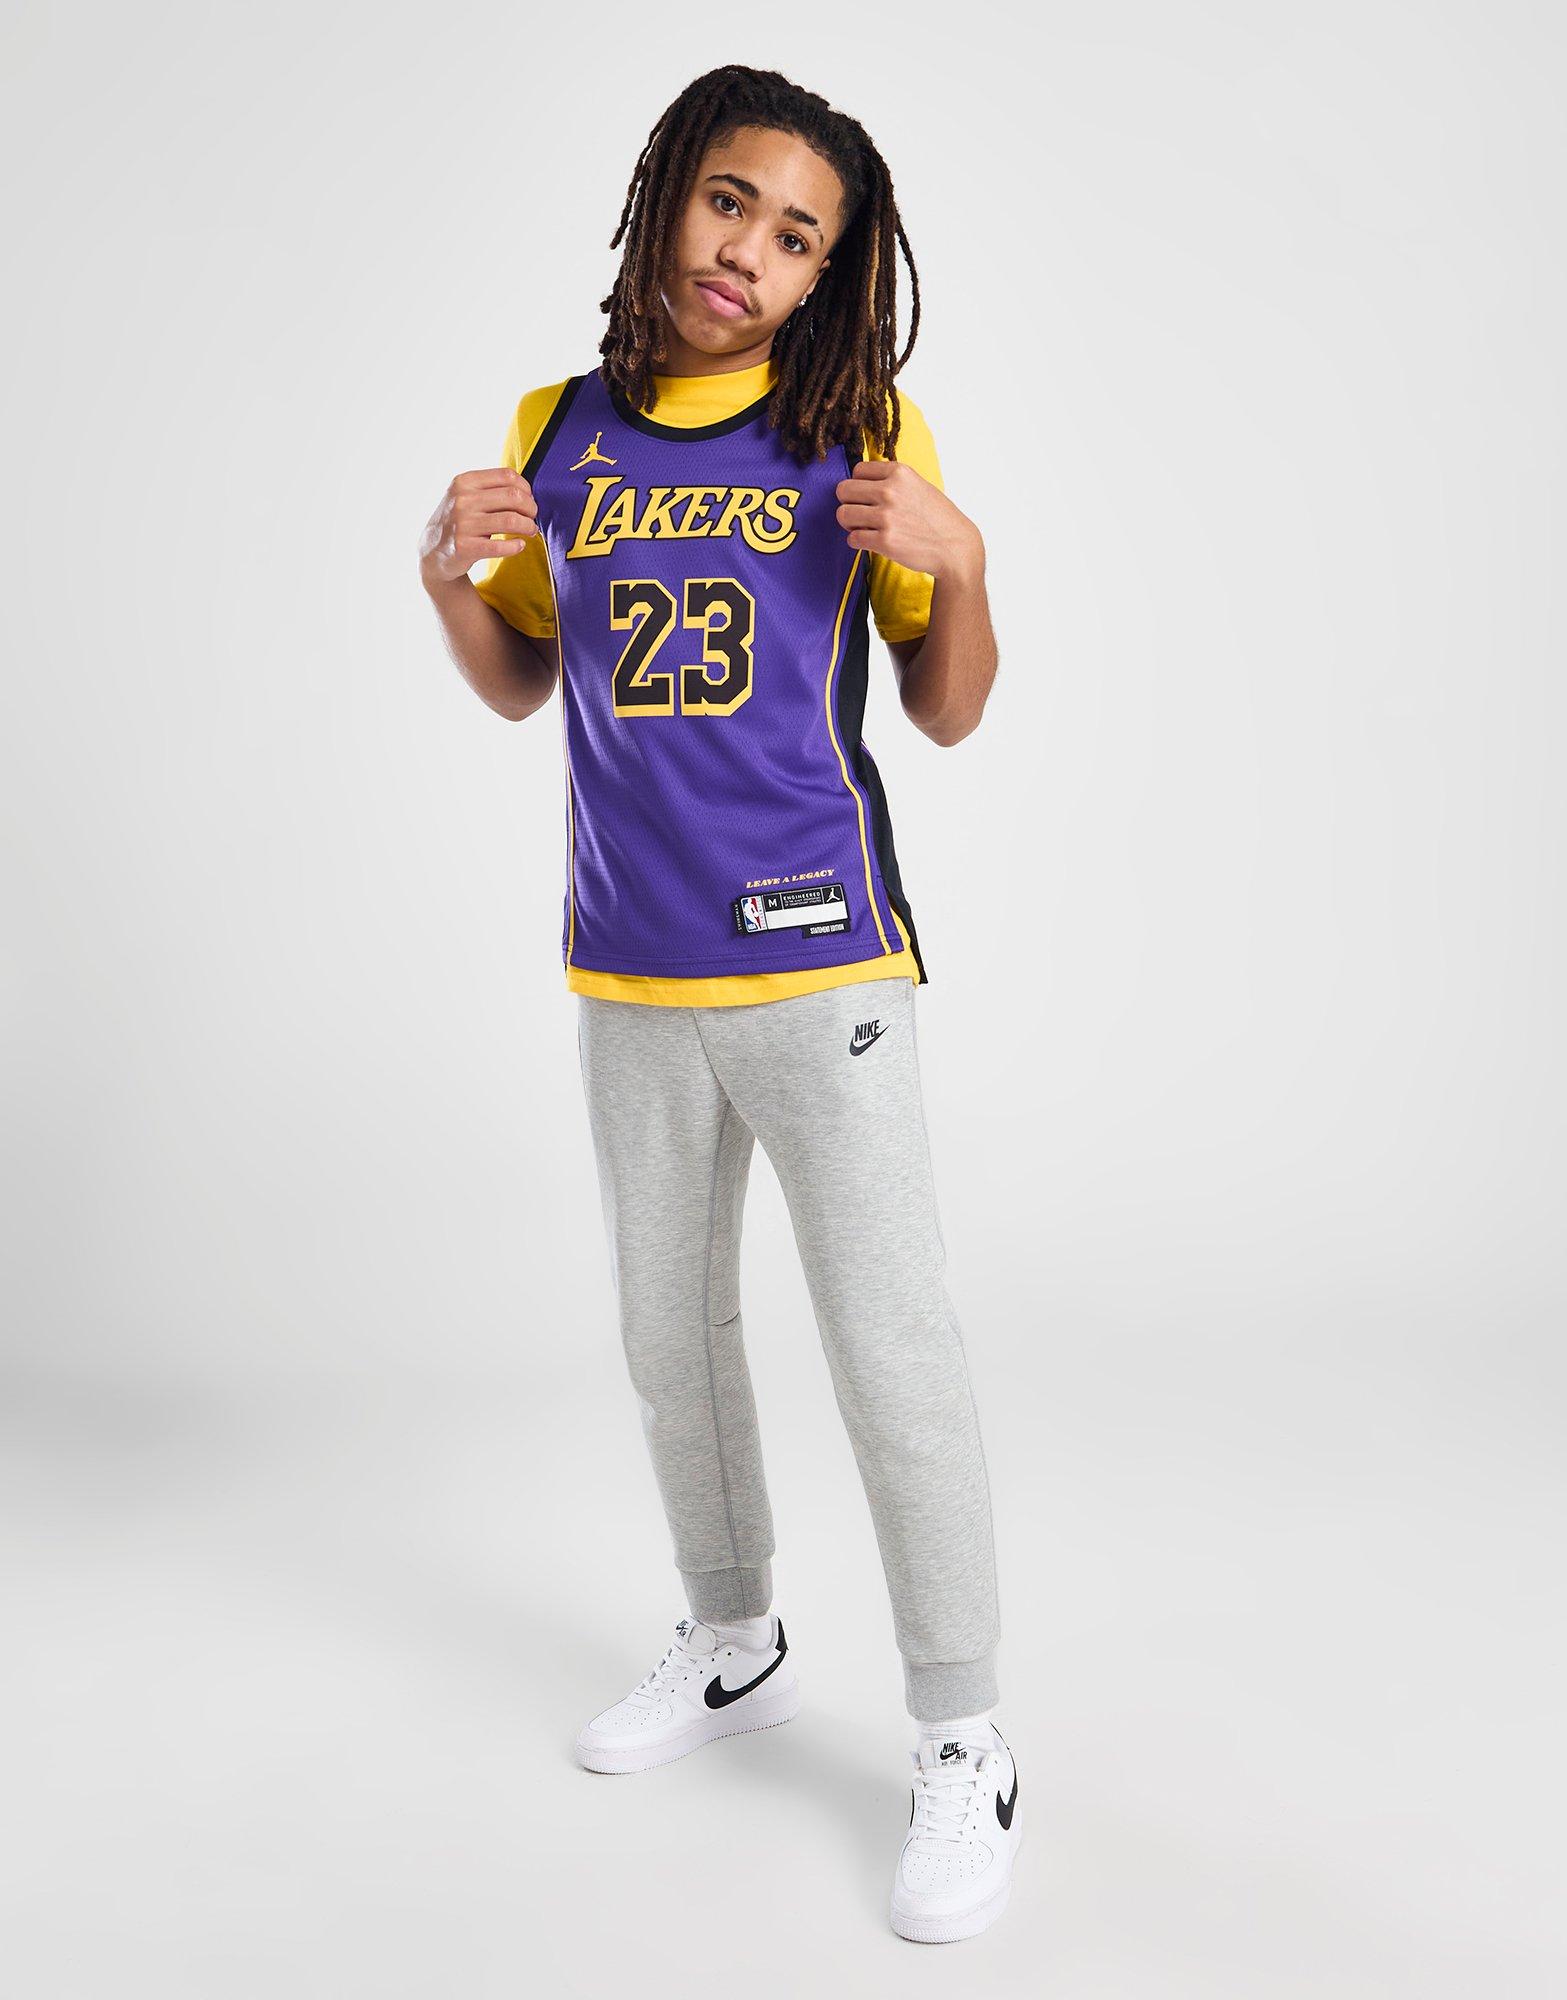 Abbigliamento Bambino (3-7 anni) - LA Lakers